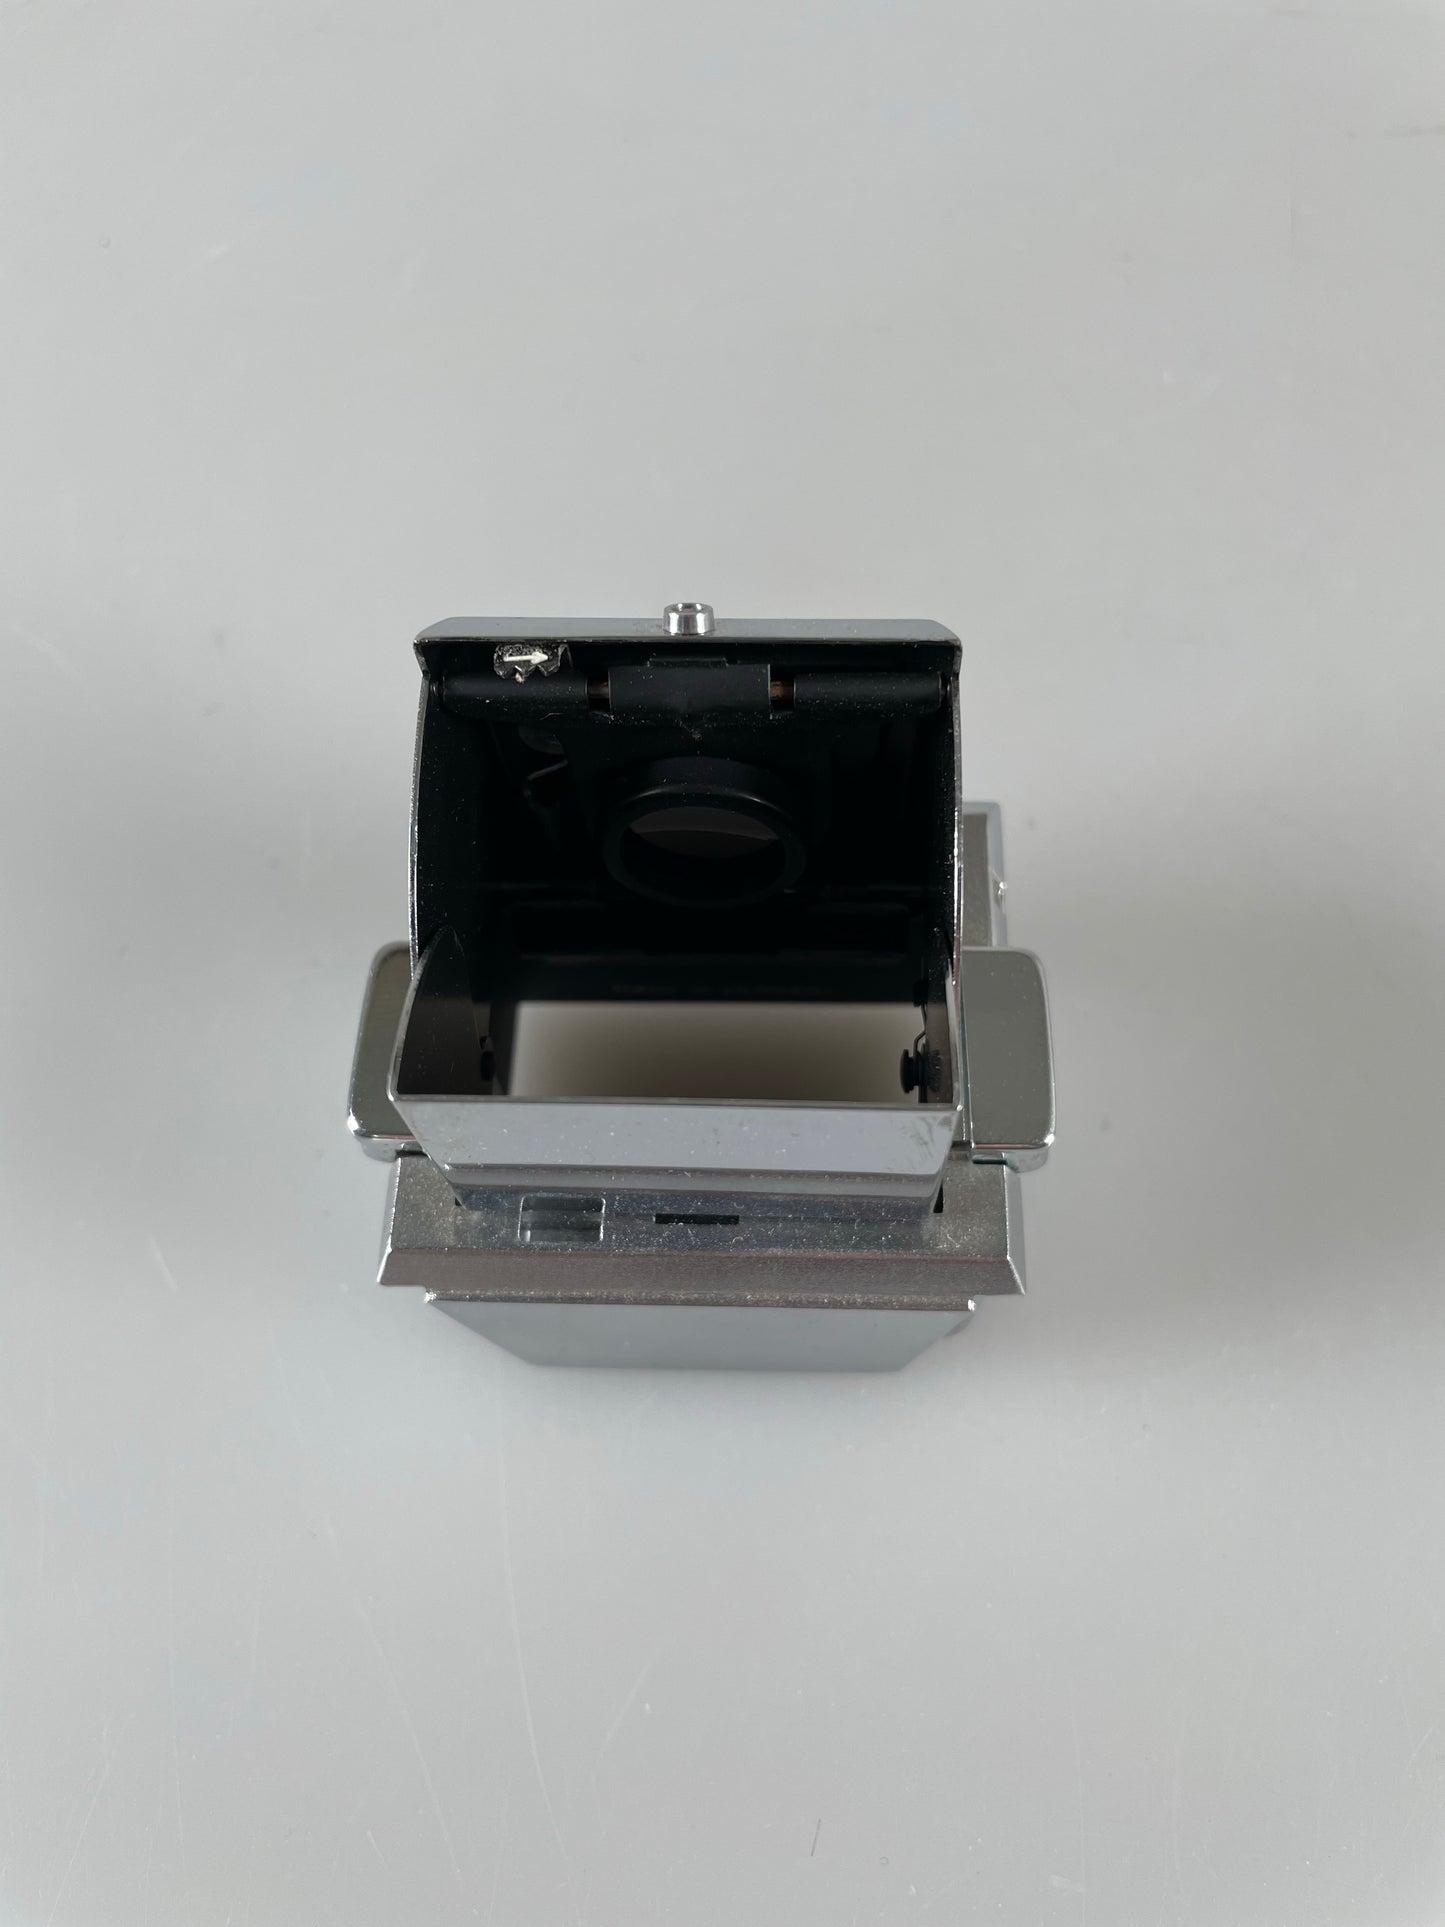 Agfa waist level finder for Ambiflex Colorflex Agfaflex camera